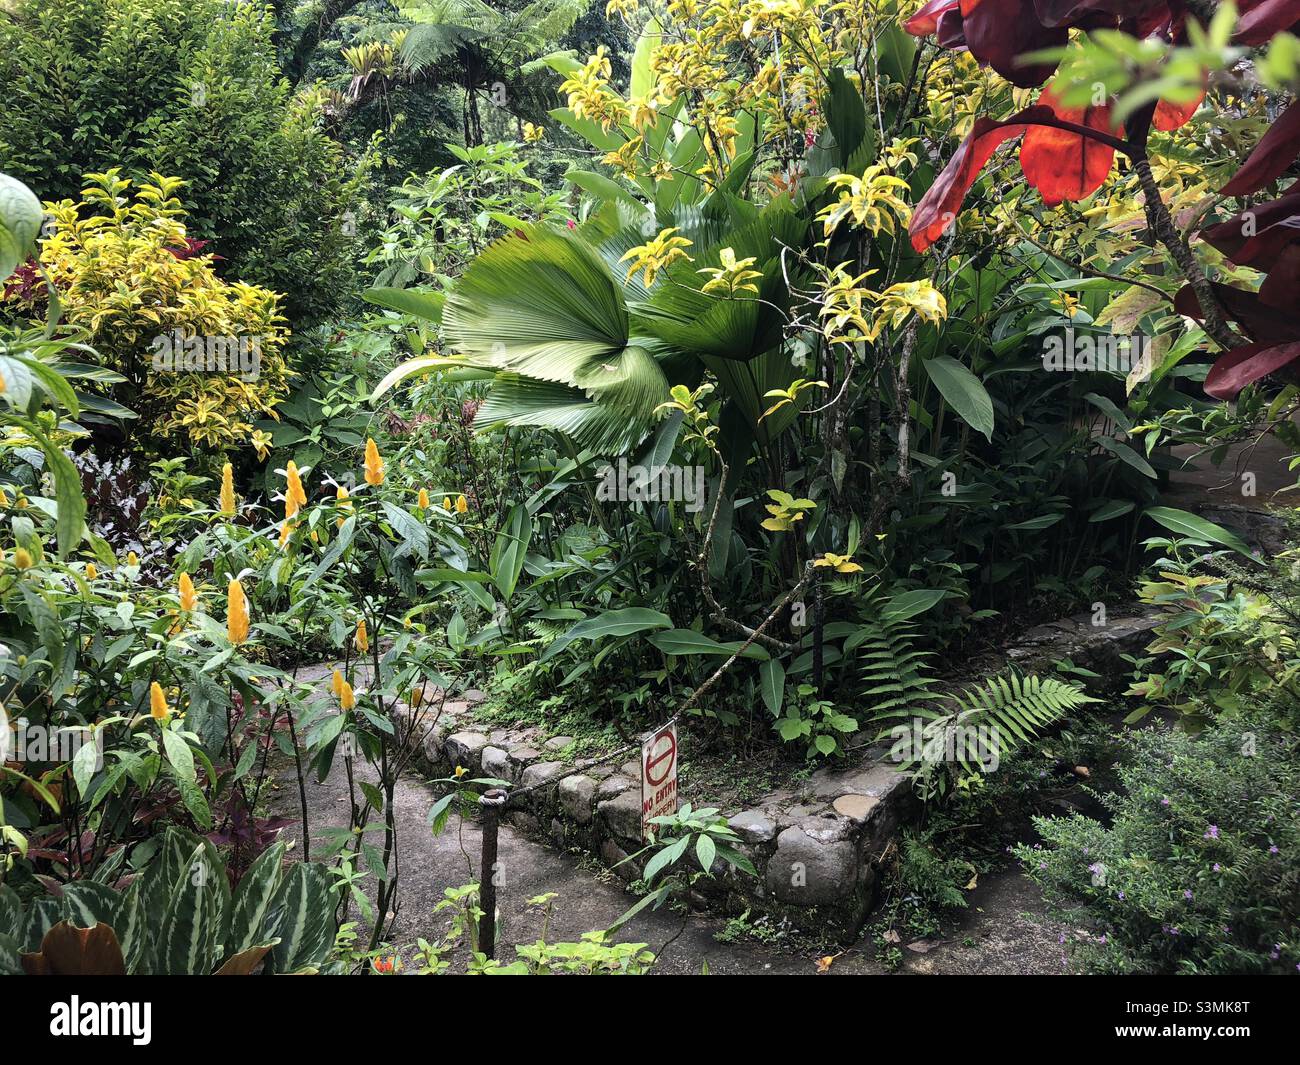 Tropical foliage in garden Stock Photo